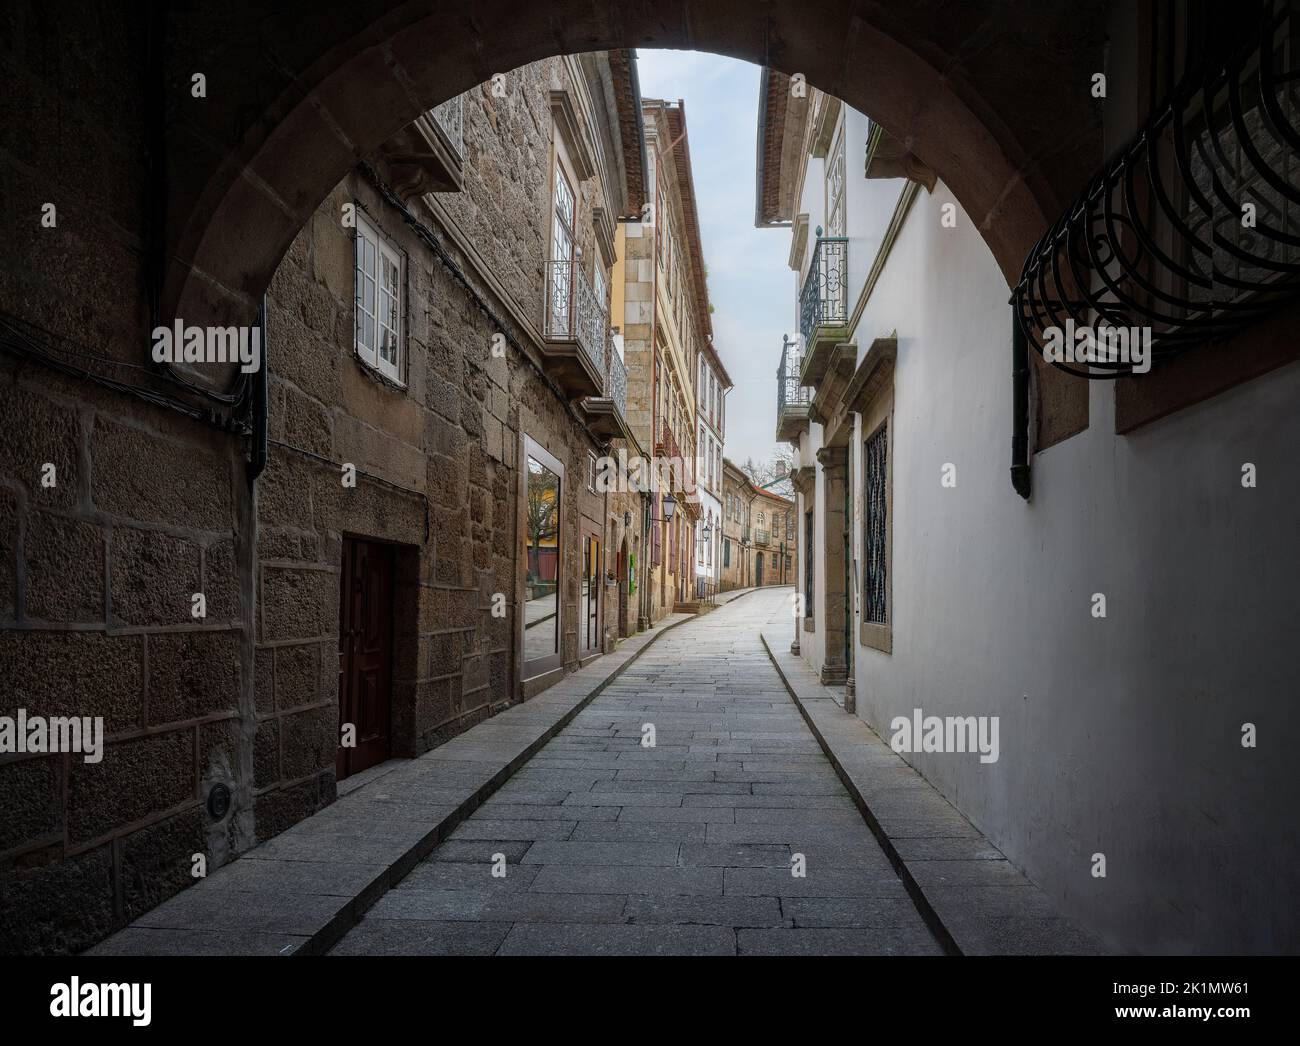 Calle medieval Santa Maria - calle más antigua de la ciudad - Guimaraes, Portugal Foto de stock